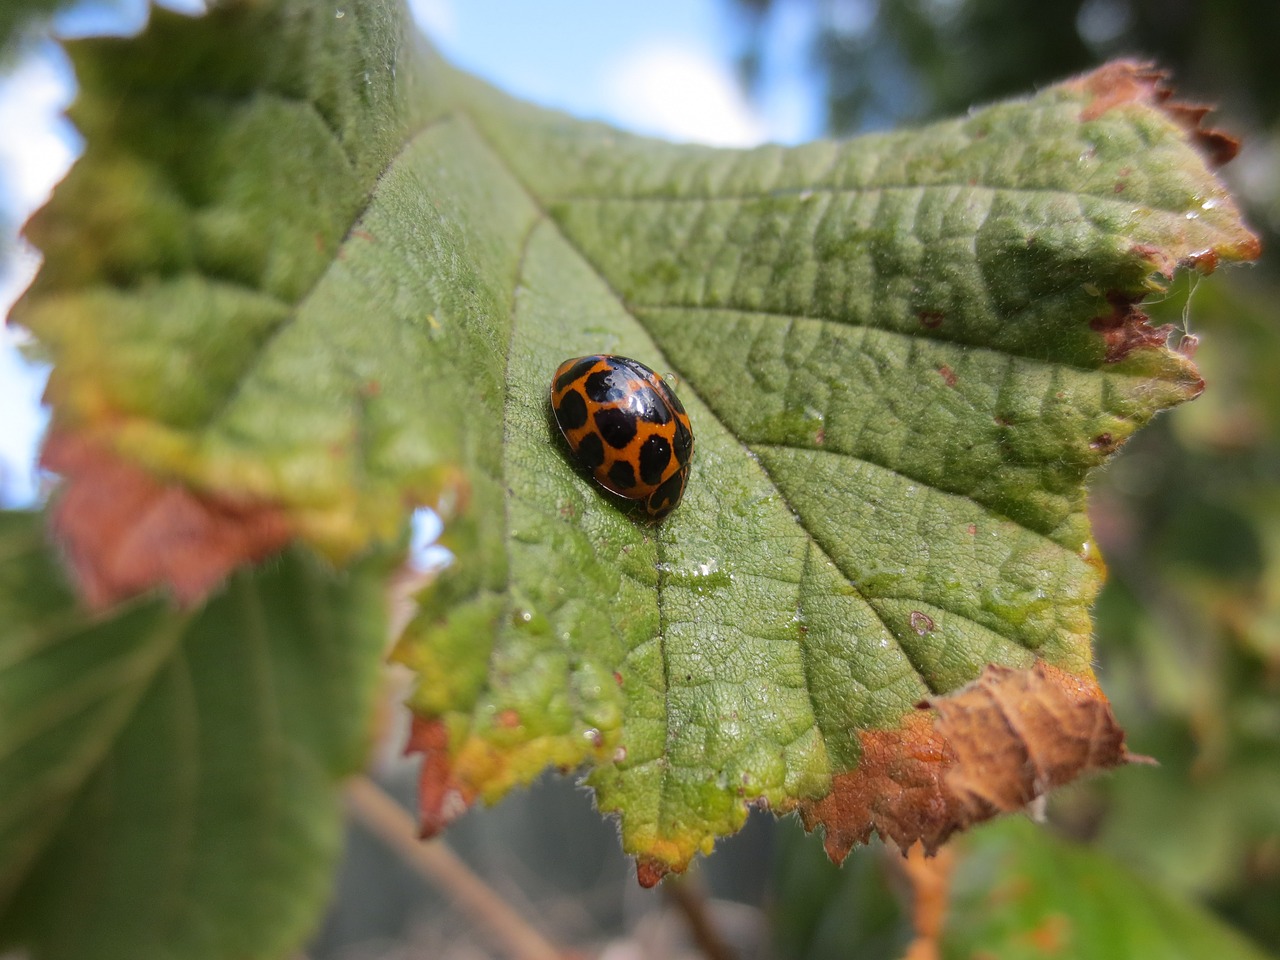 ladybird ladybug beetle free photo